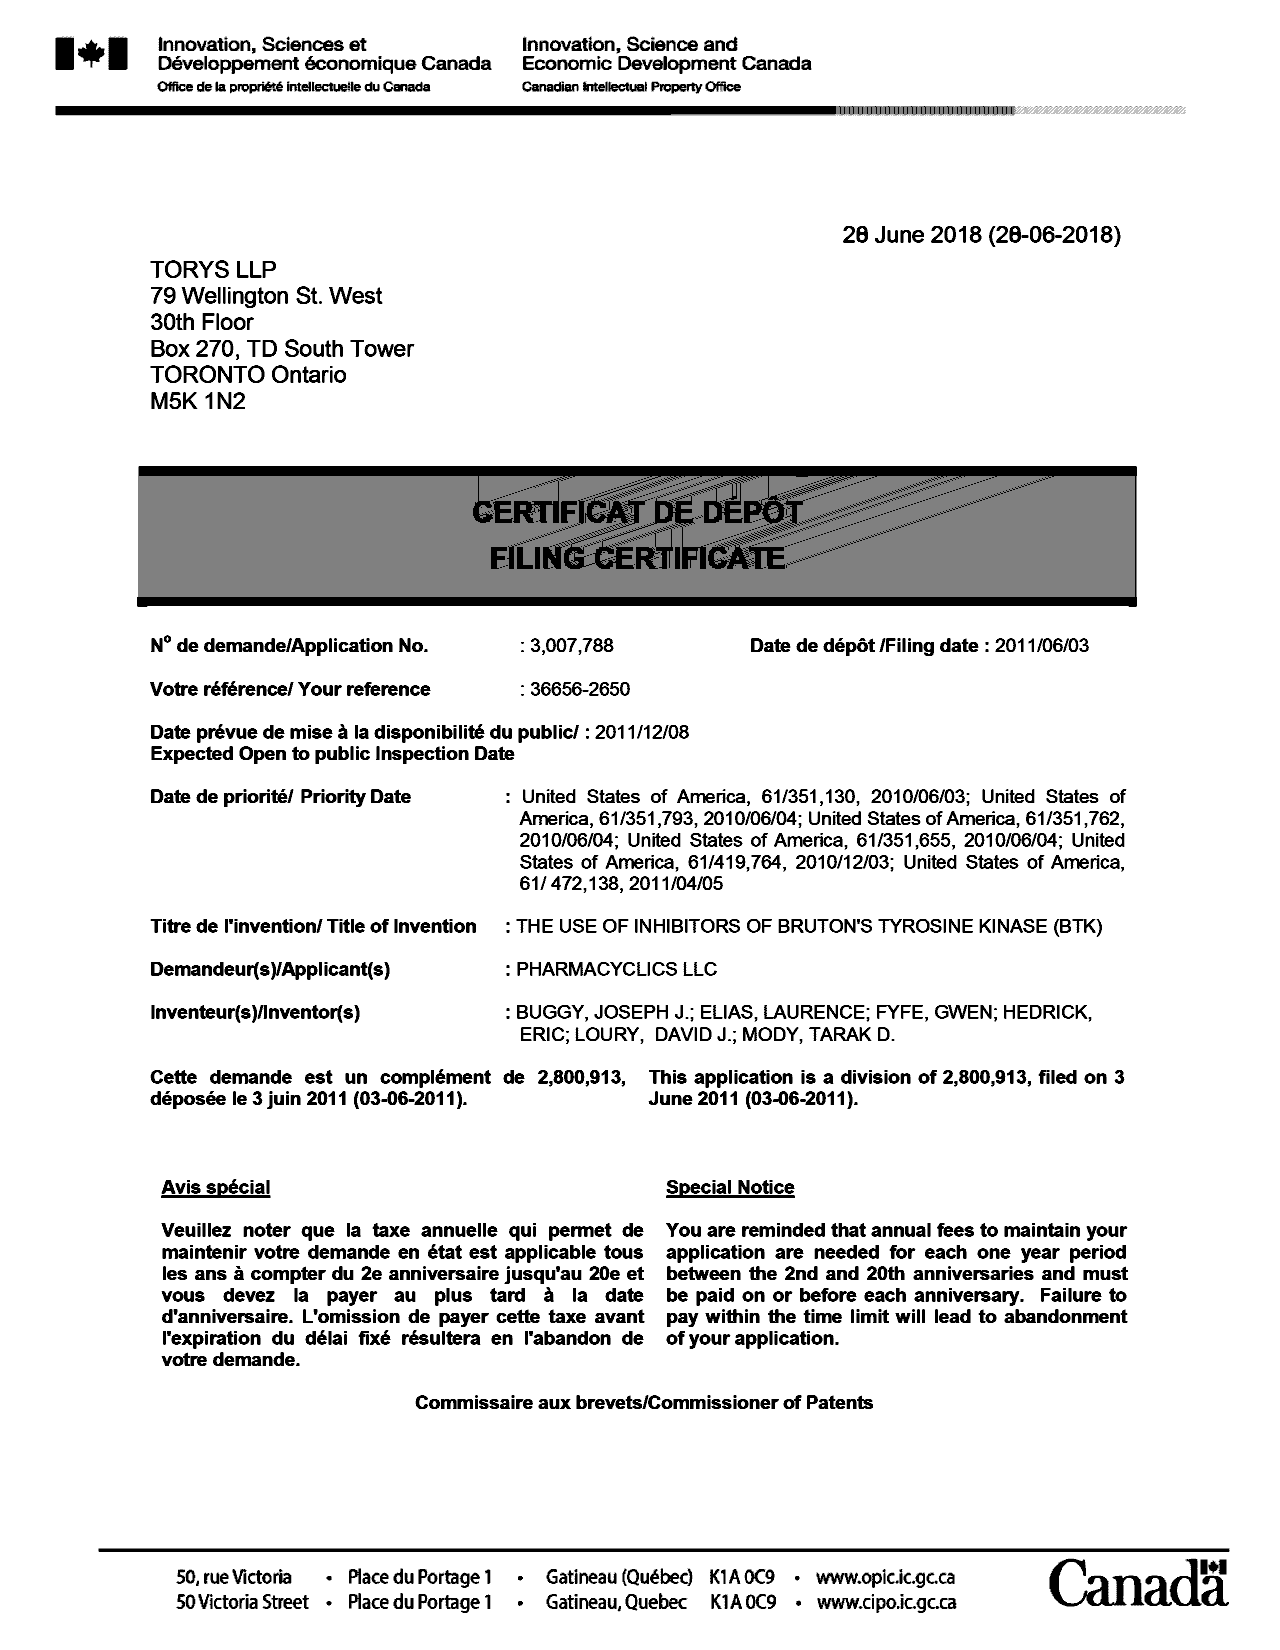 Document de brevet canadien 3007788. Complémentaire - Certificat de dépôt 20180628. Image 1 de 1